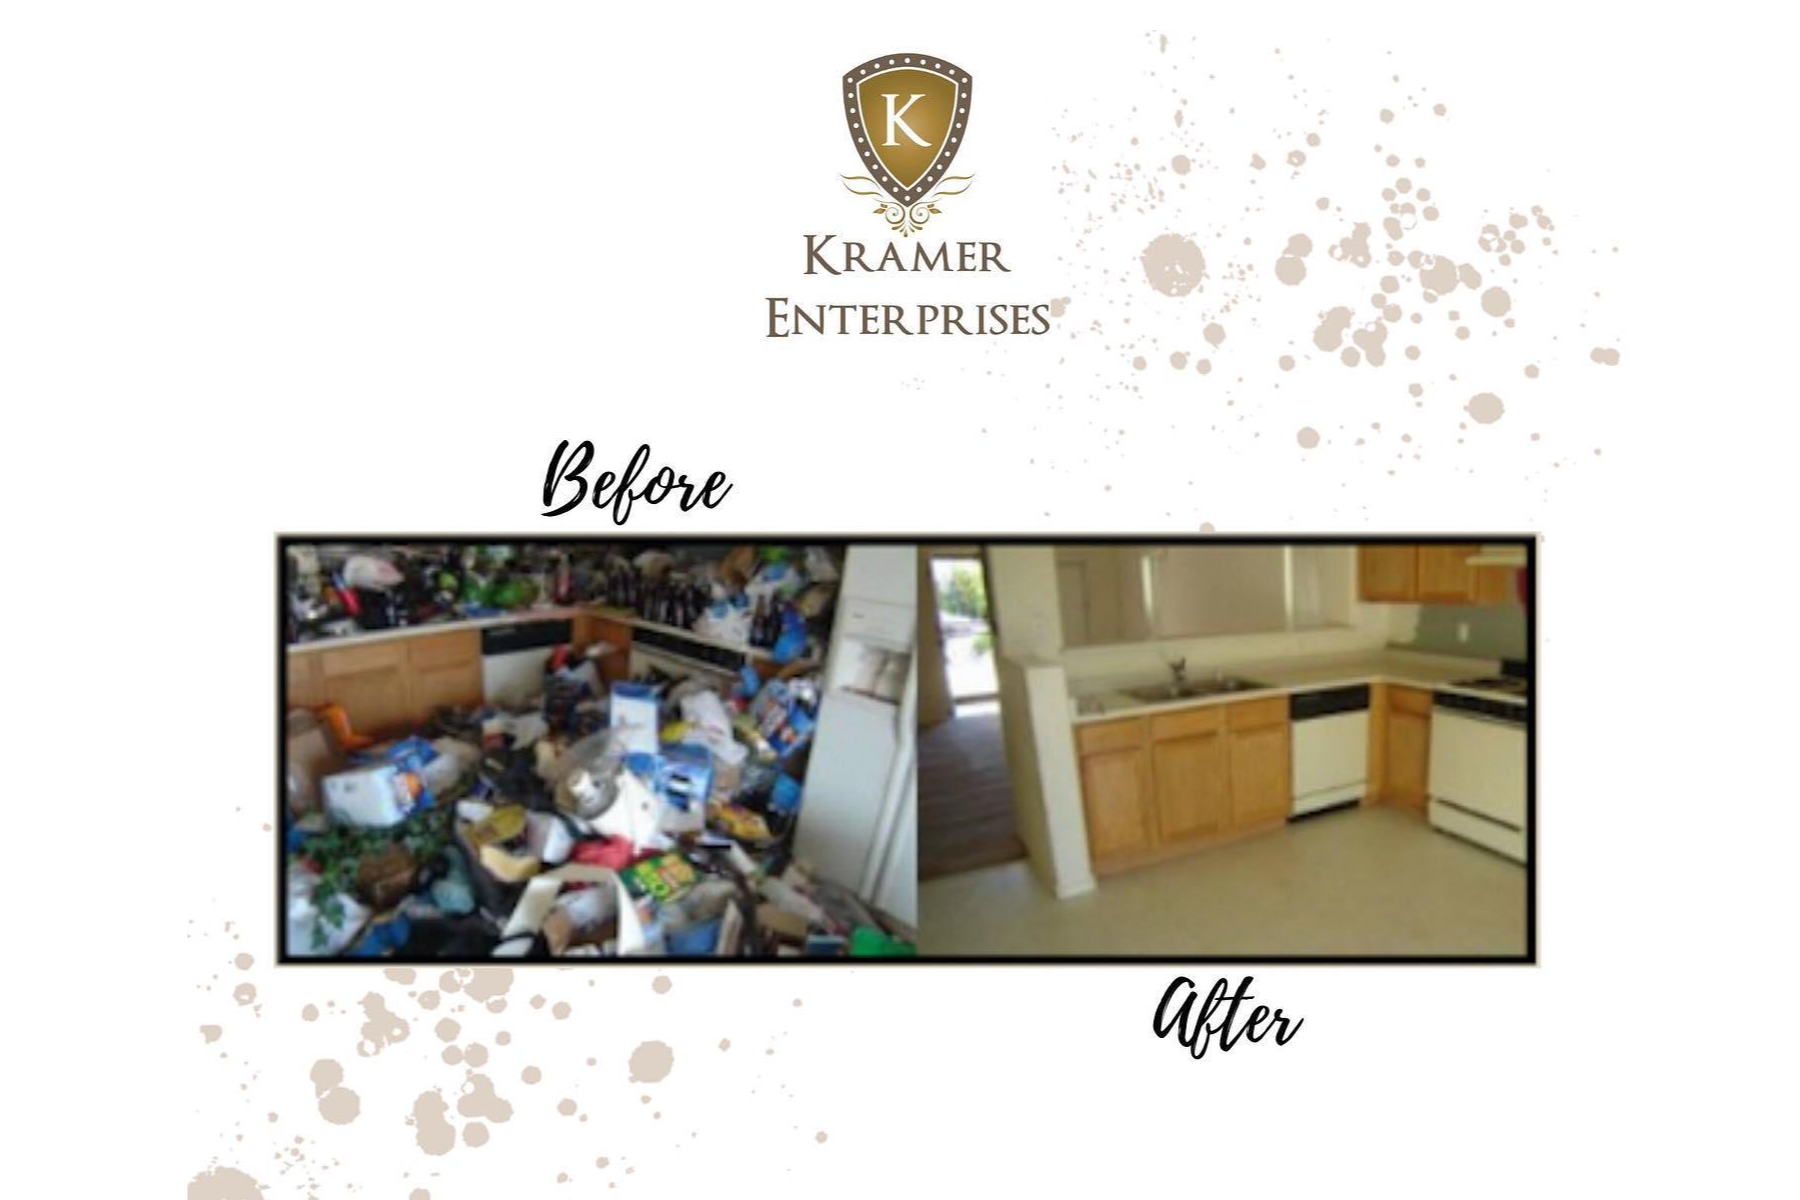 Waste Management for Kramer Enterprises in NW Suite 1, Washington